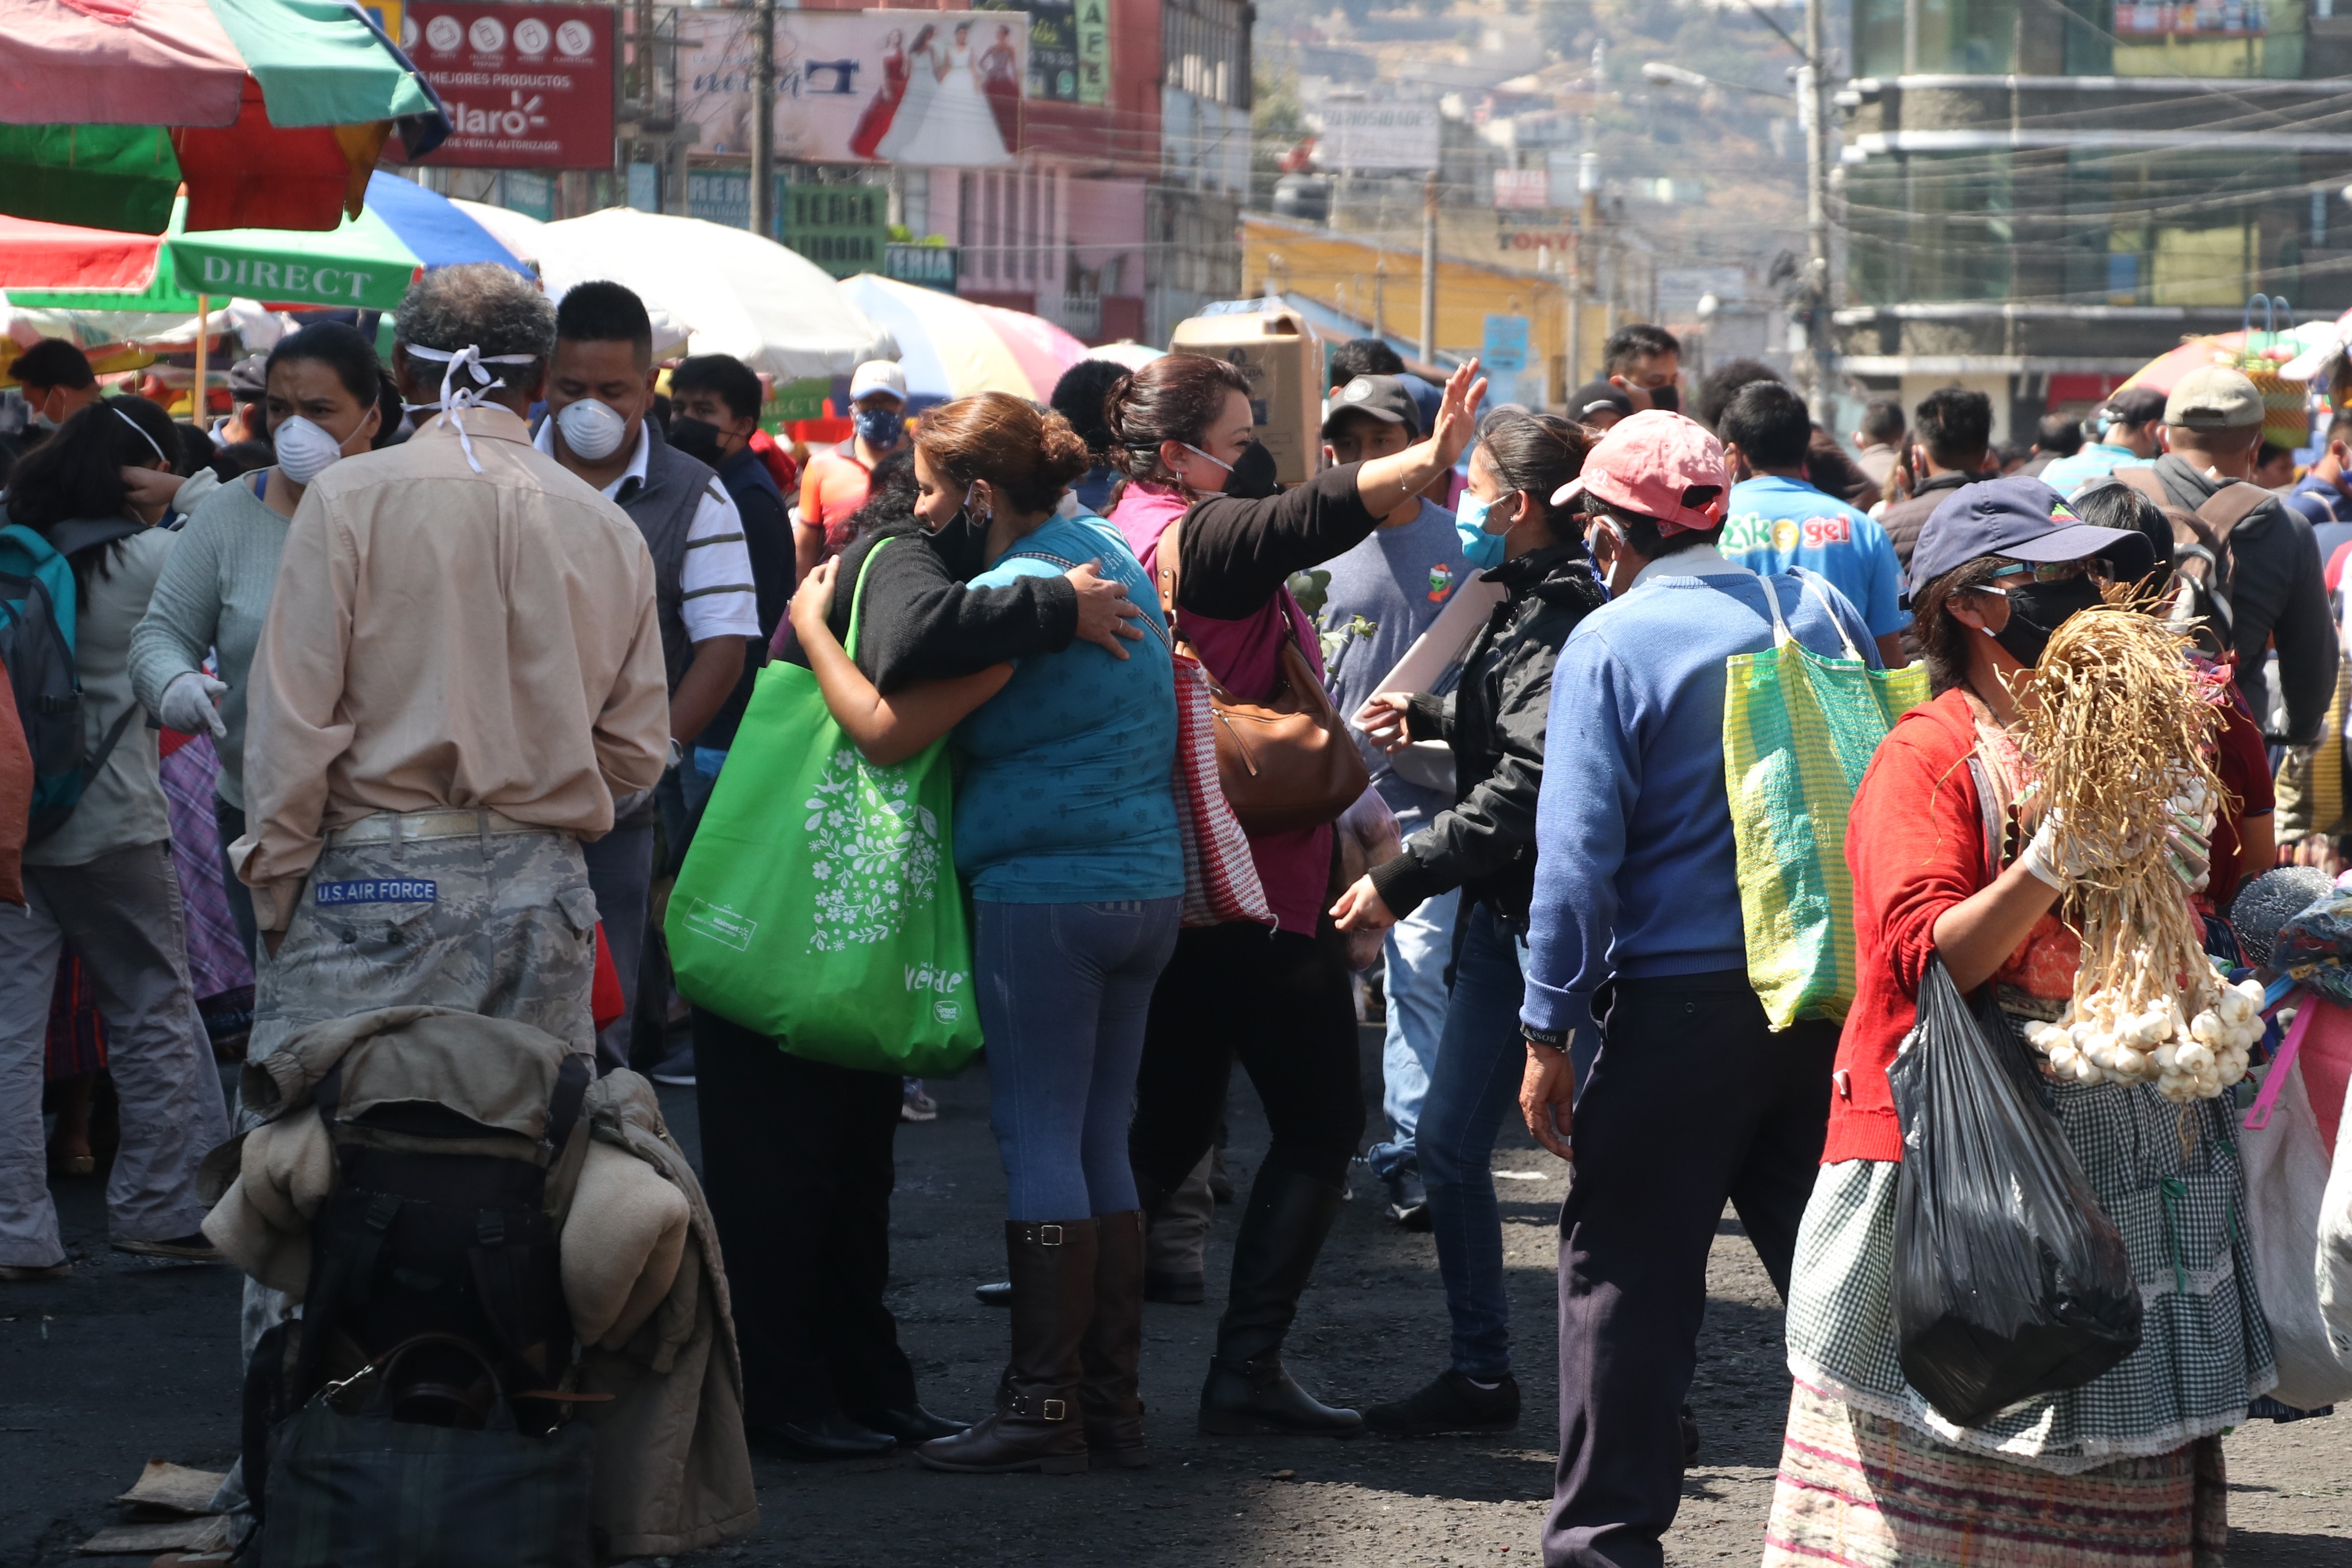 En las últimas semanas se ha incrementado la cantidad de personas en los mercados sin guardar el distanciamiento social. (Foto Prensa Libre: Raúl Juárez)